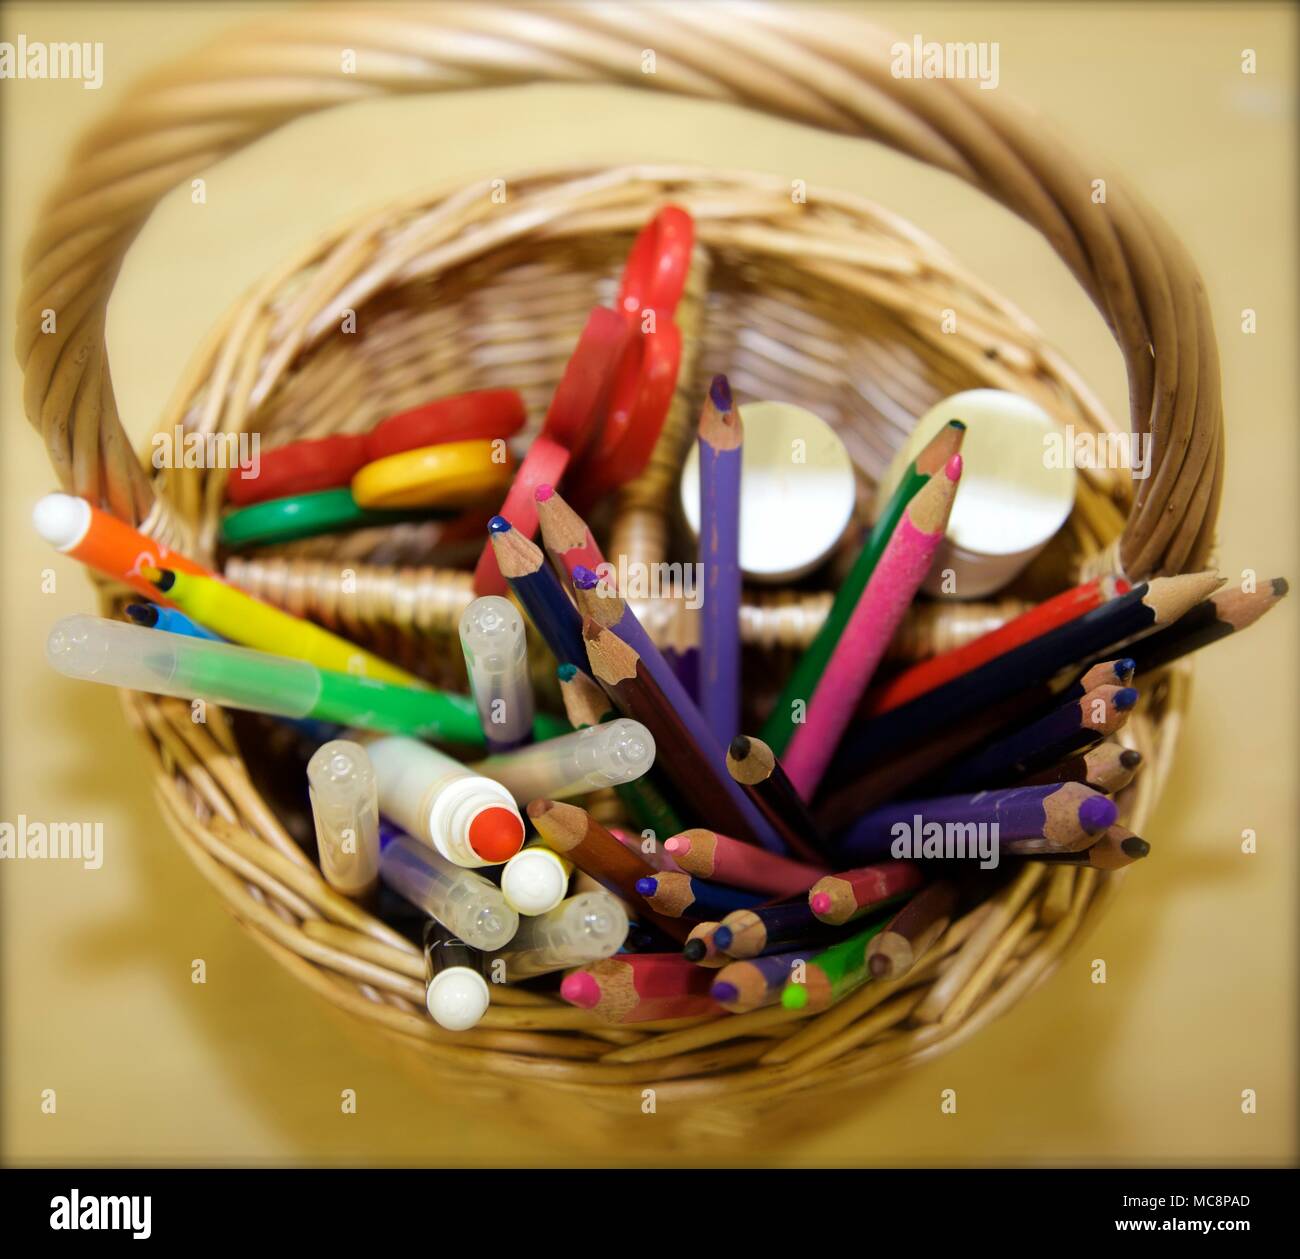 Crayons, stylos, colle et ciseaux dans un panier en osier Banque D'Images